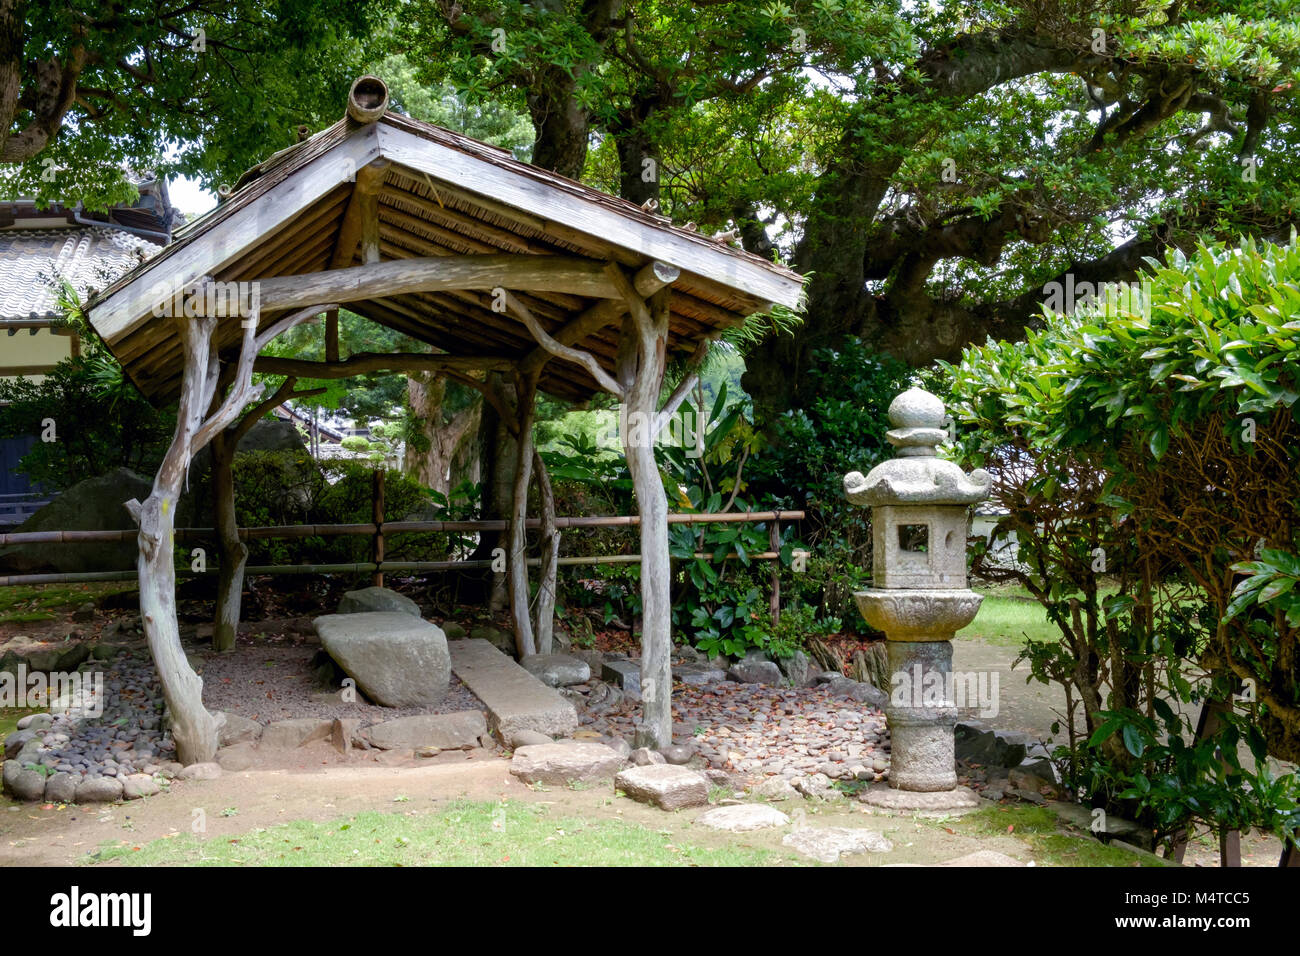 Giardino a Matsura Museo Storico, Hirado, di Nagasaki, Giappone. Struttura in stile rustico con tetto in centro, pietra memoriale sulla destra. Alberi, rocce e cespugli. Foto Stock